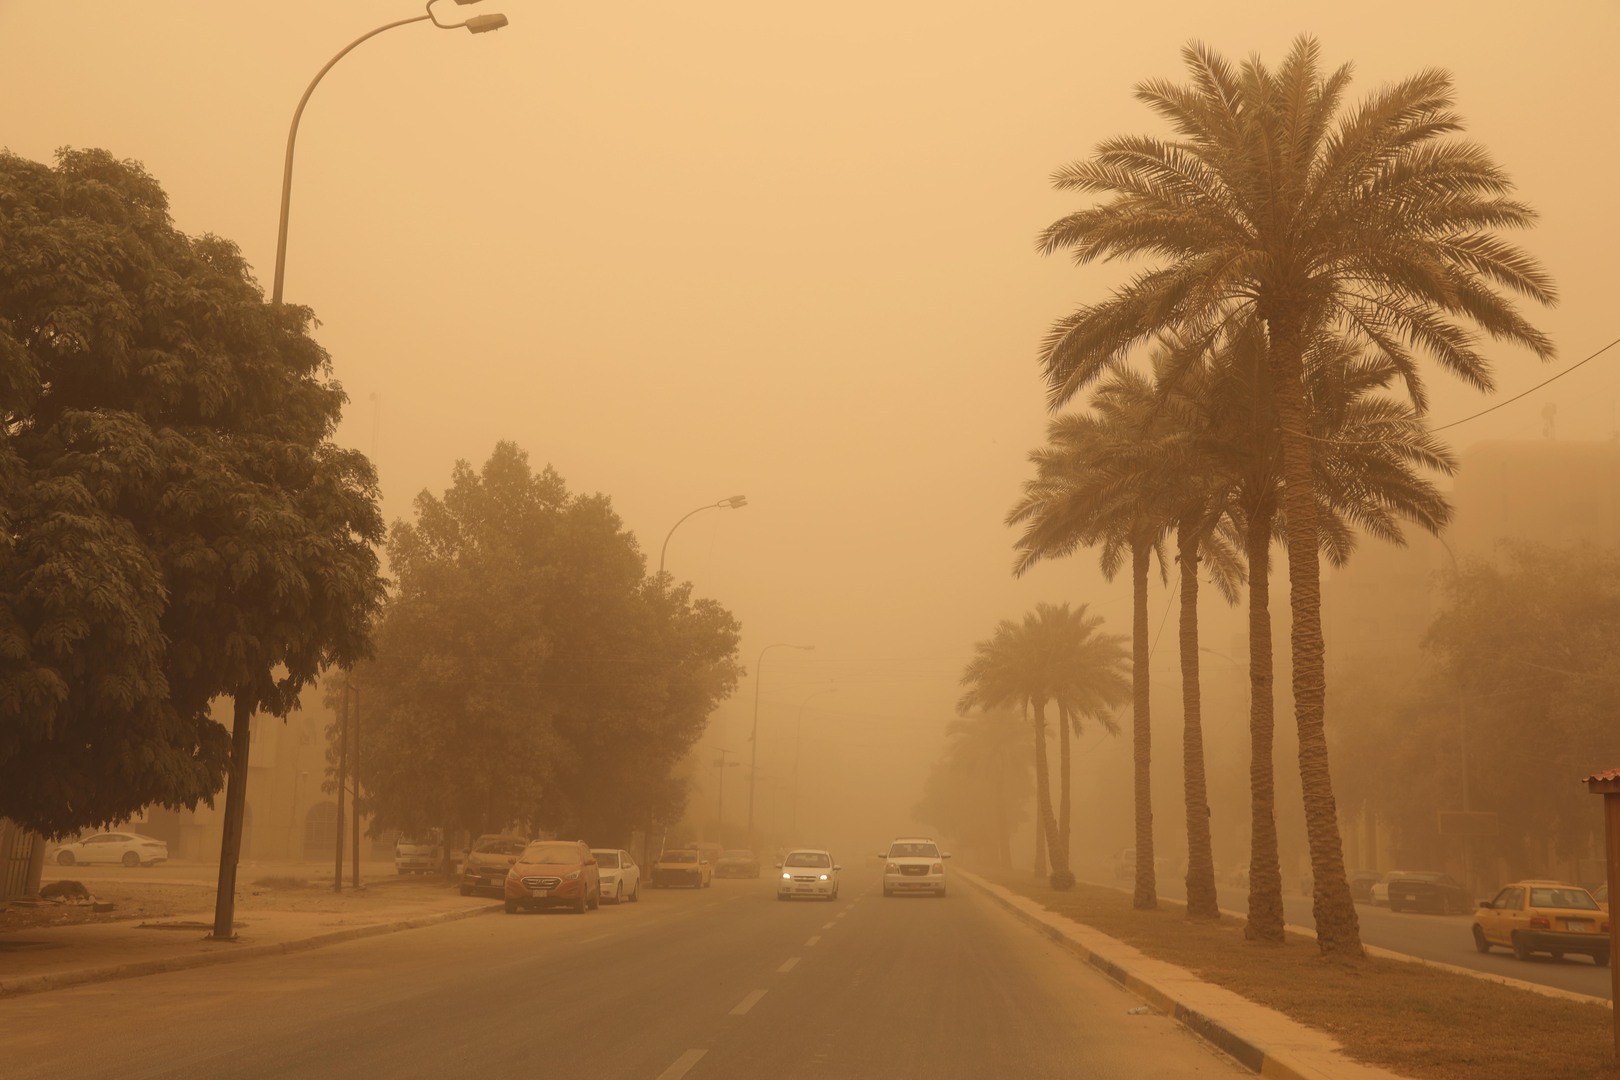 العراق.. تعطيل الدوام الرسمي الاثنين بسبب سوء الأحوال الجوية